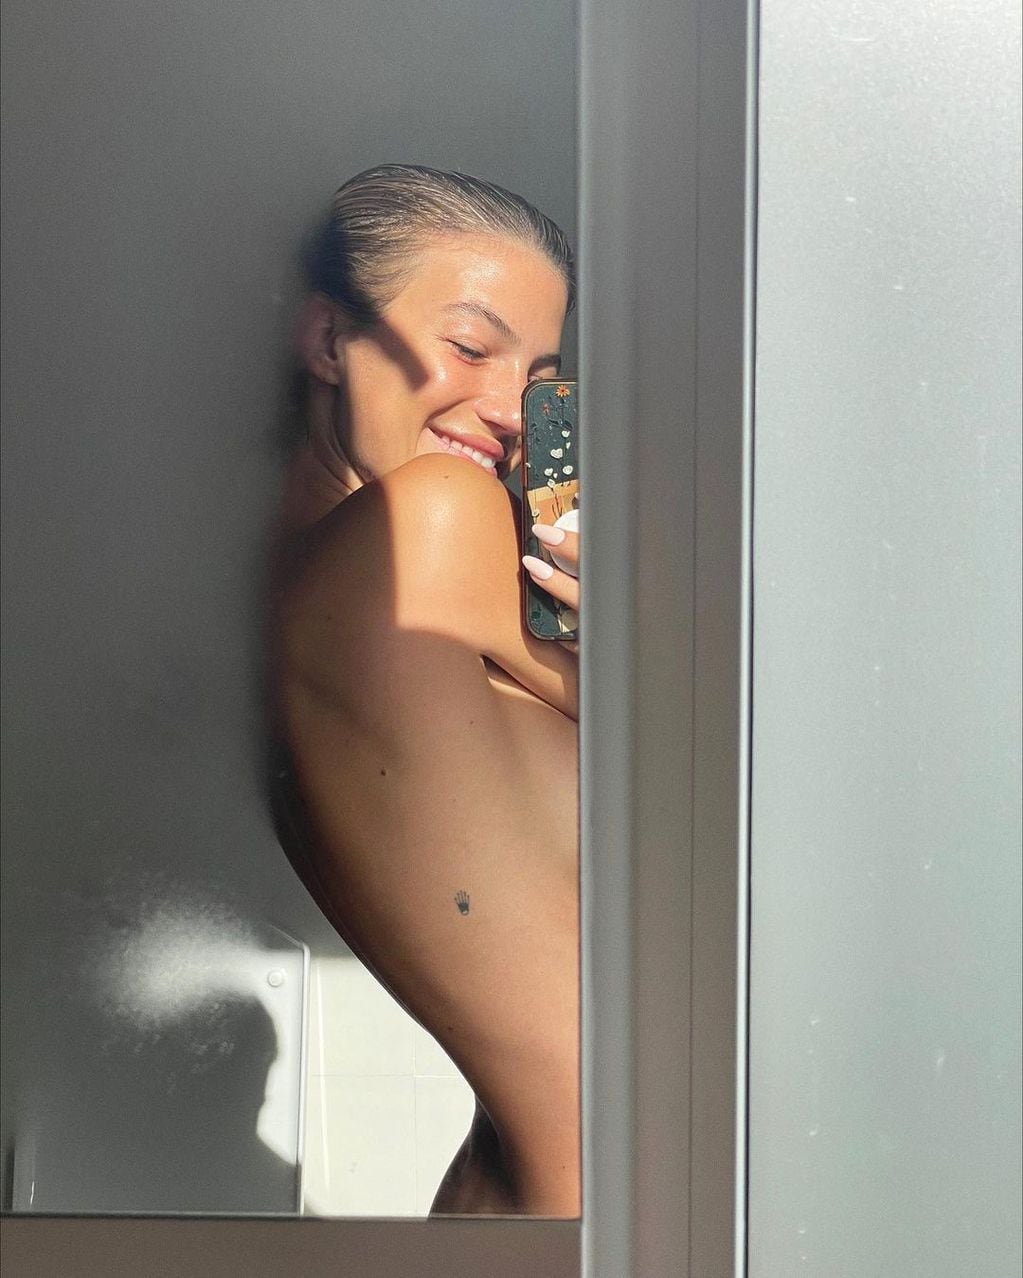 Desde la ducha y frente al espejo, Stefi Roitman sorprendió con fotos sin ropa.